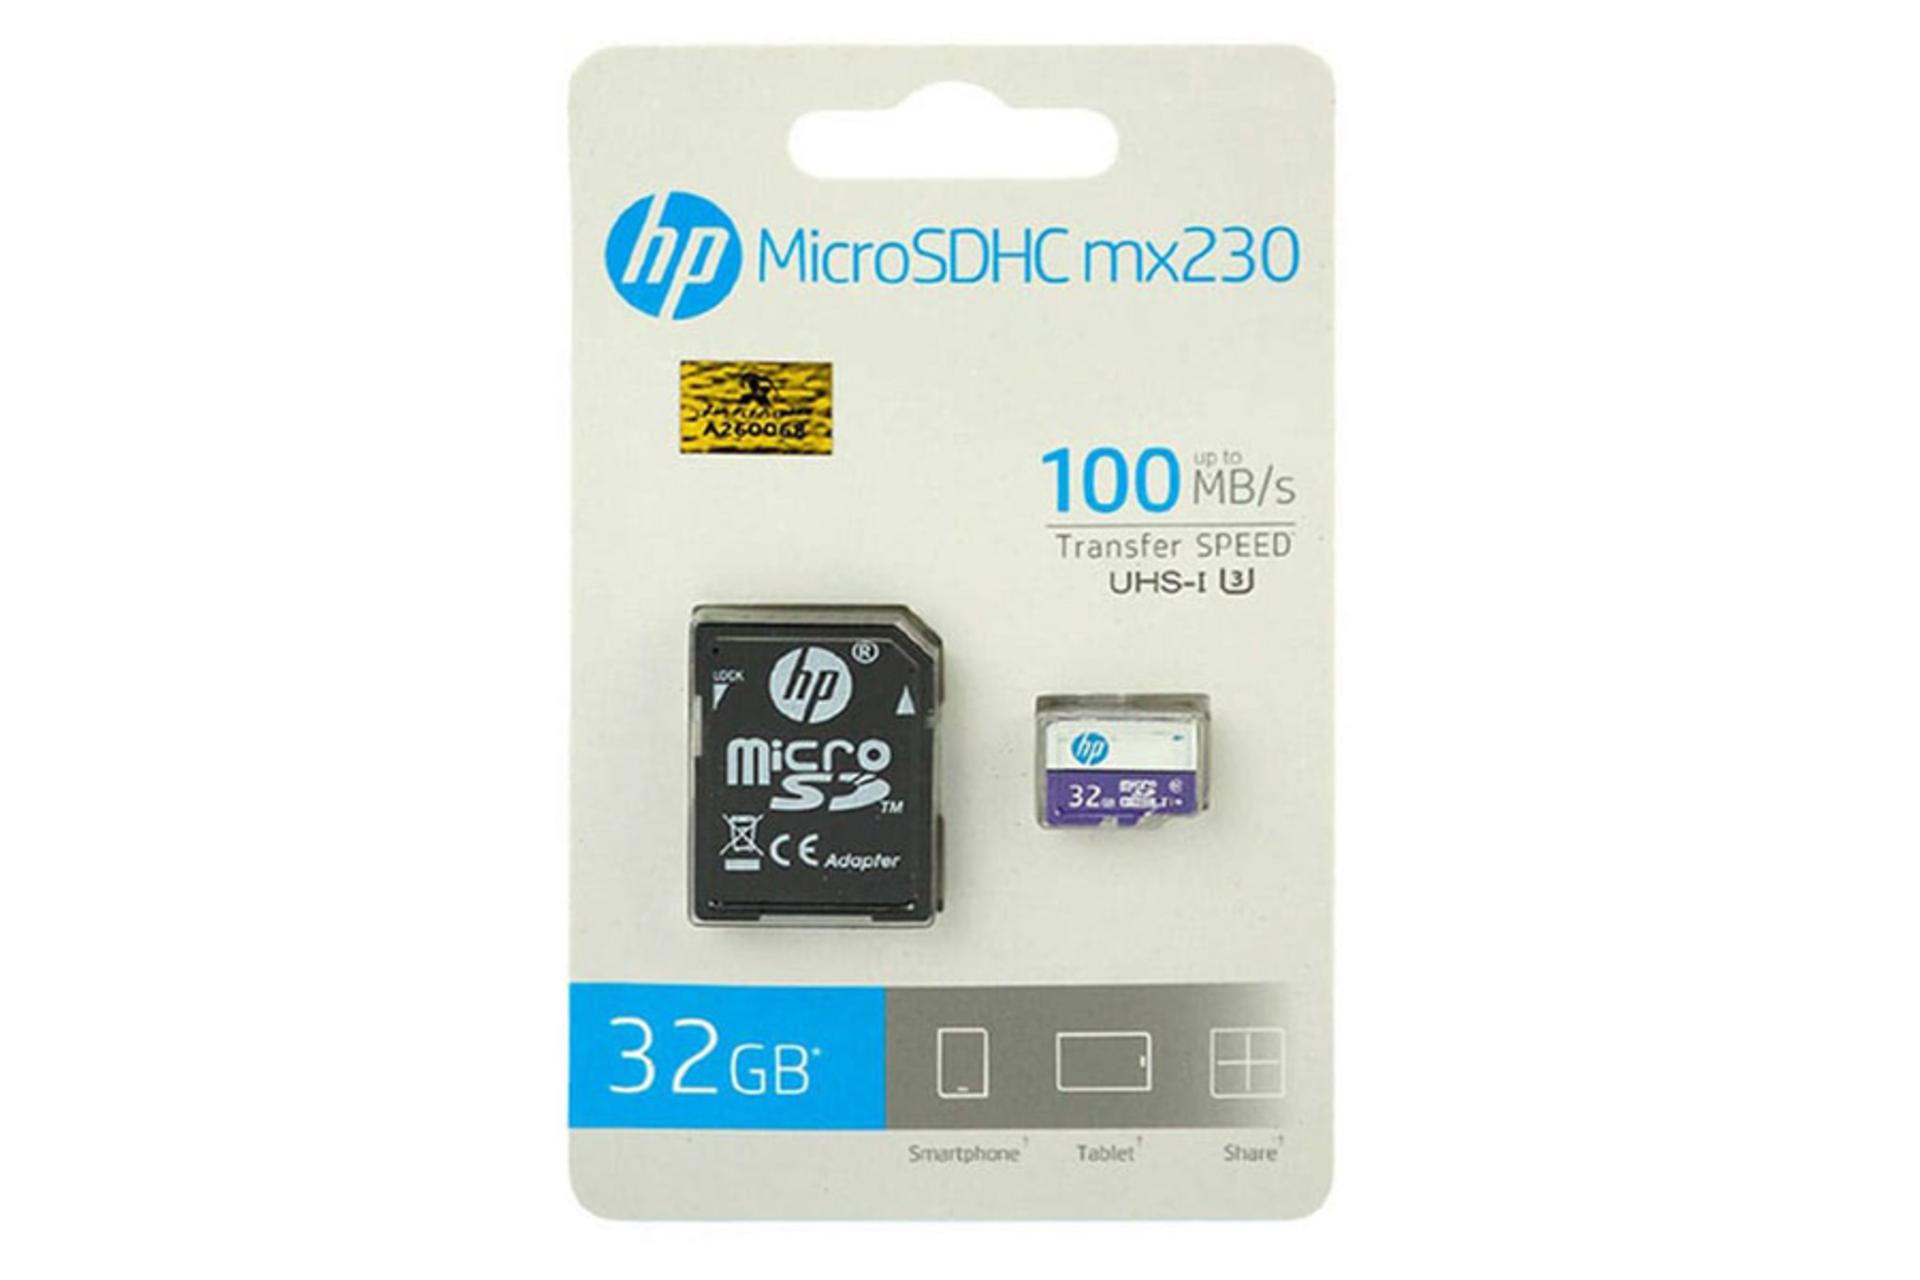 جعبه کارت حافظه اچ پی microSDHC با ظرفیت 32 گیگابایت مدل MX230 کلاس 10